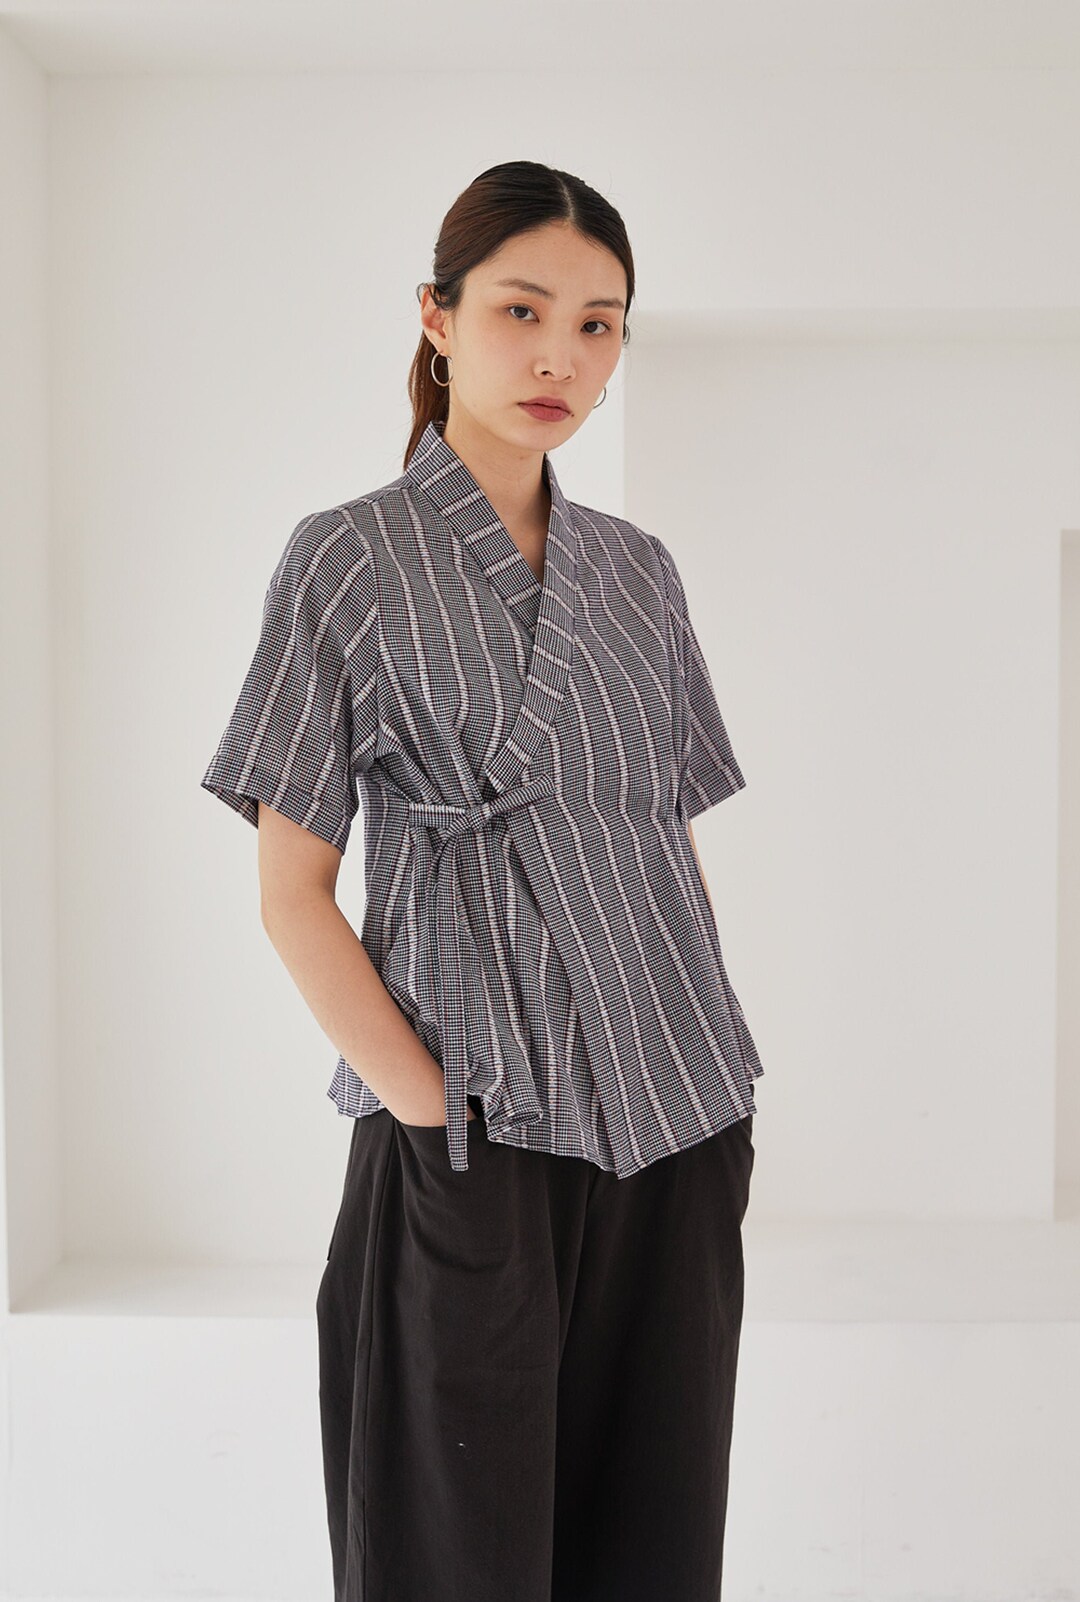 Women's Wrap Blouse Korean Modern Hanbok Shirt Jeogori - Etsy